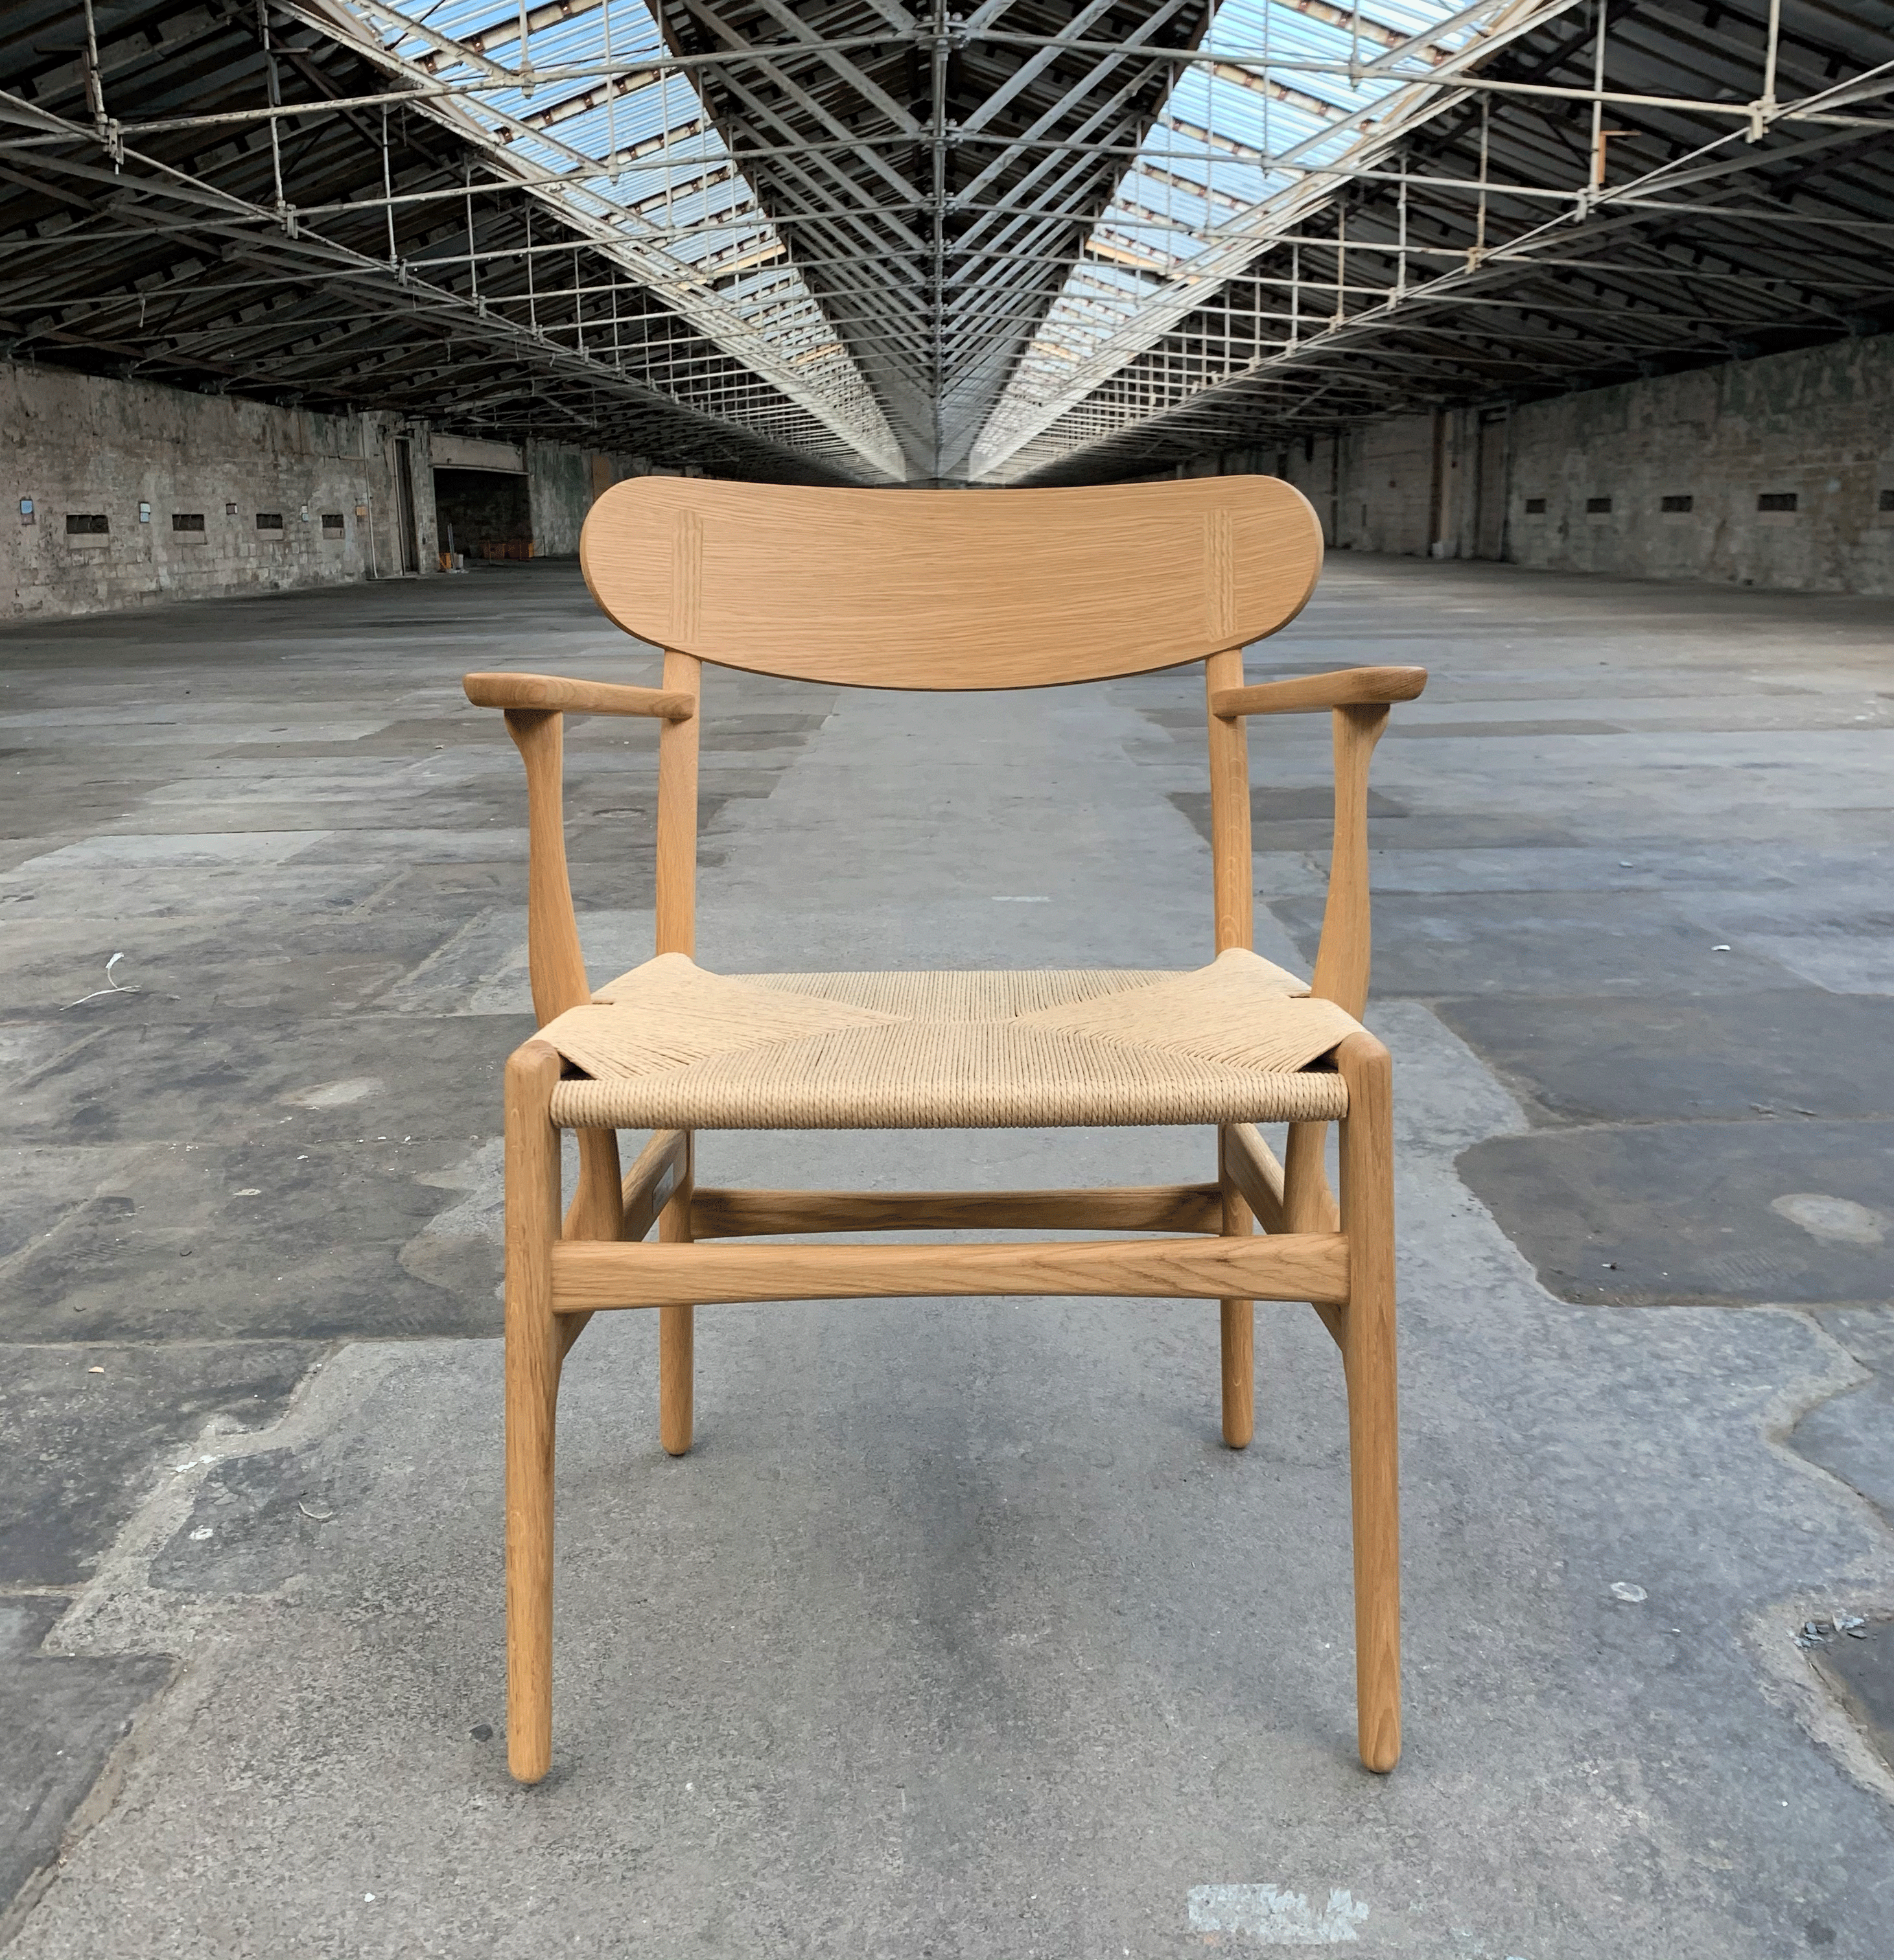 applaus sympathie vochtigheid CH26 Chair des. Hans J. Wegner, 1950 (made by Carl Hansen & Son) – Salts  Mill Shop